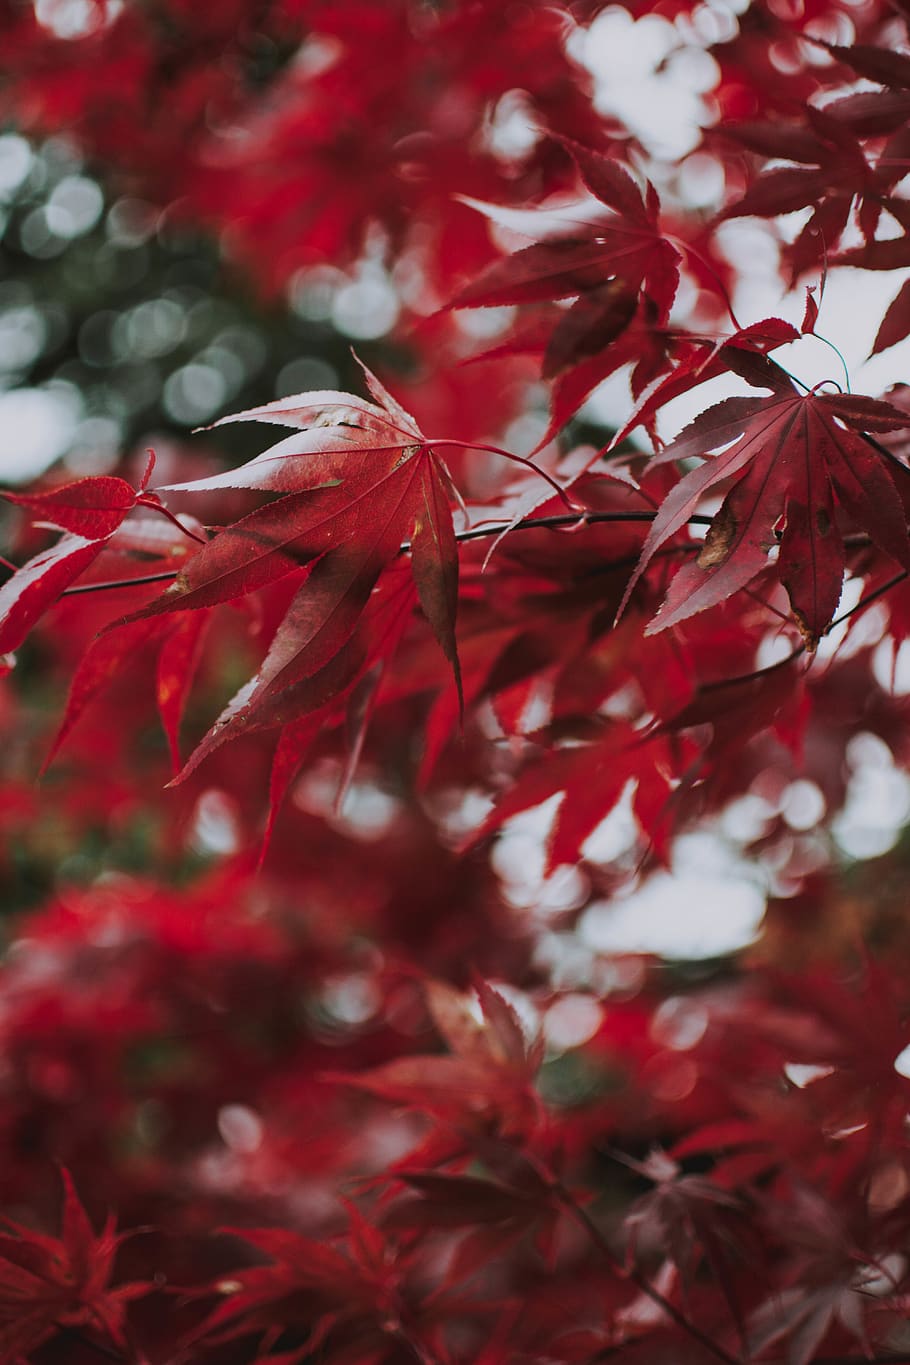 red leaves of tree, leaf, plant, maple, maple leaf, veins, anise